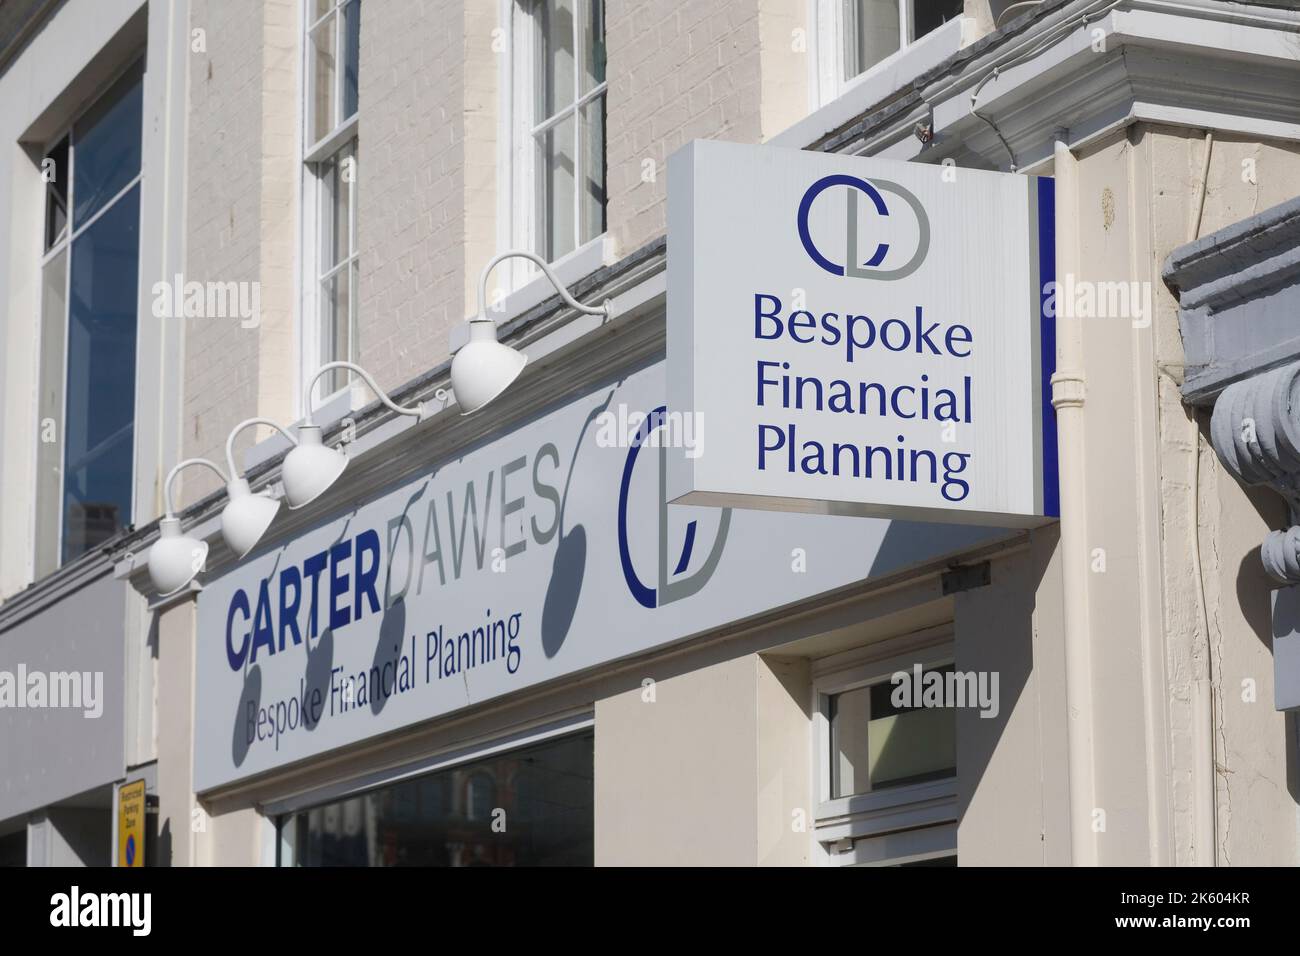 Firme en la oficina de los asesores financieros de Carter Dawes en Ipswich Suffolk, Inglaterra Foto de stock